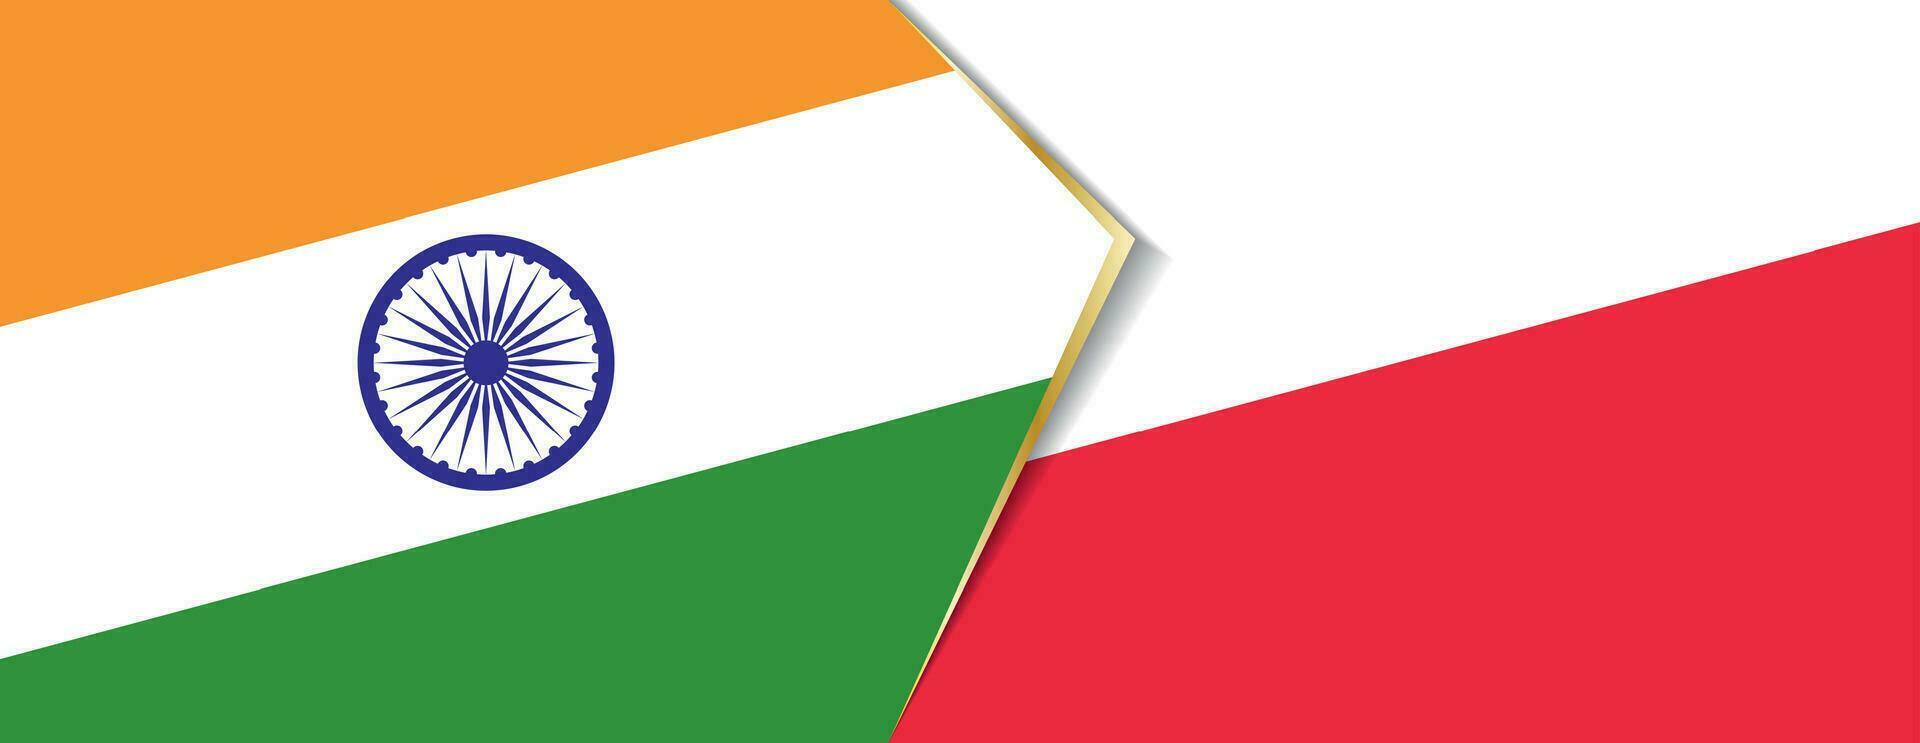 Indien och polen flaggor, två vektor flaggor.